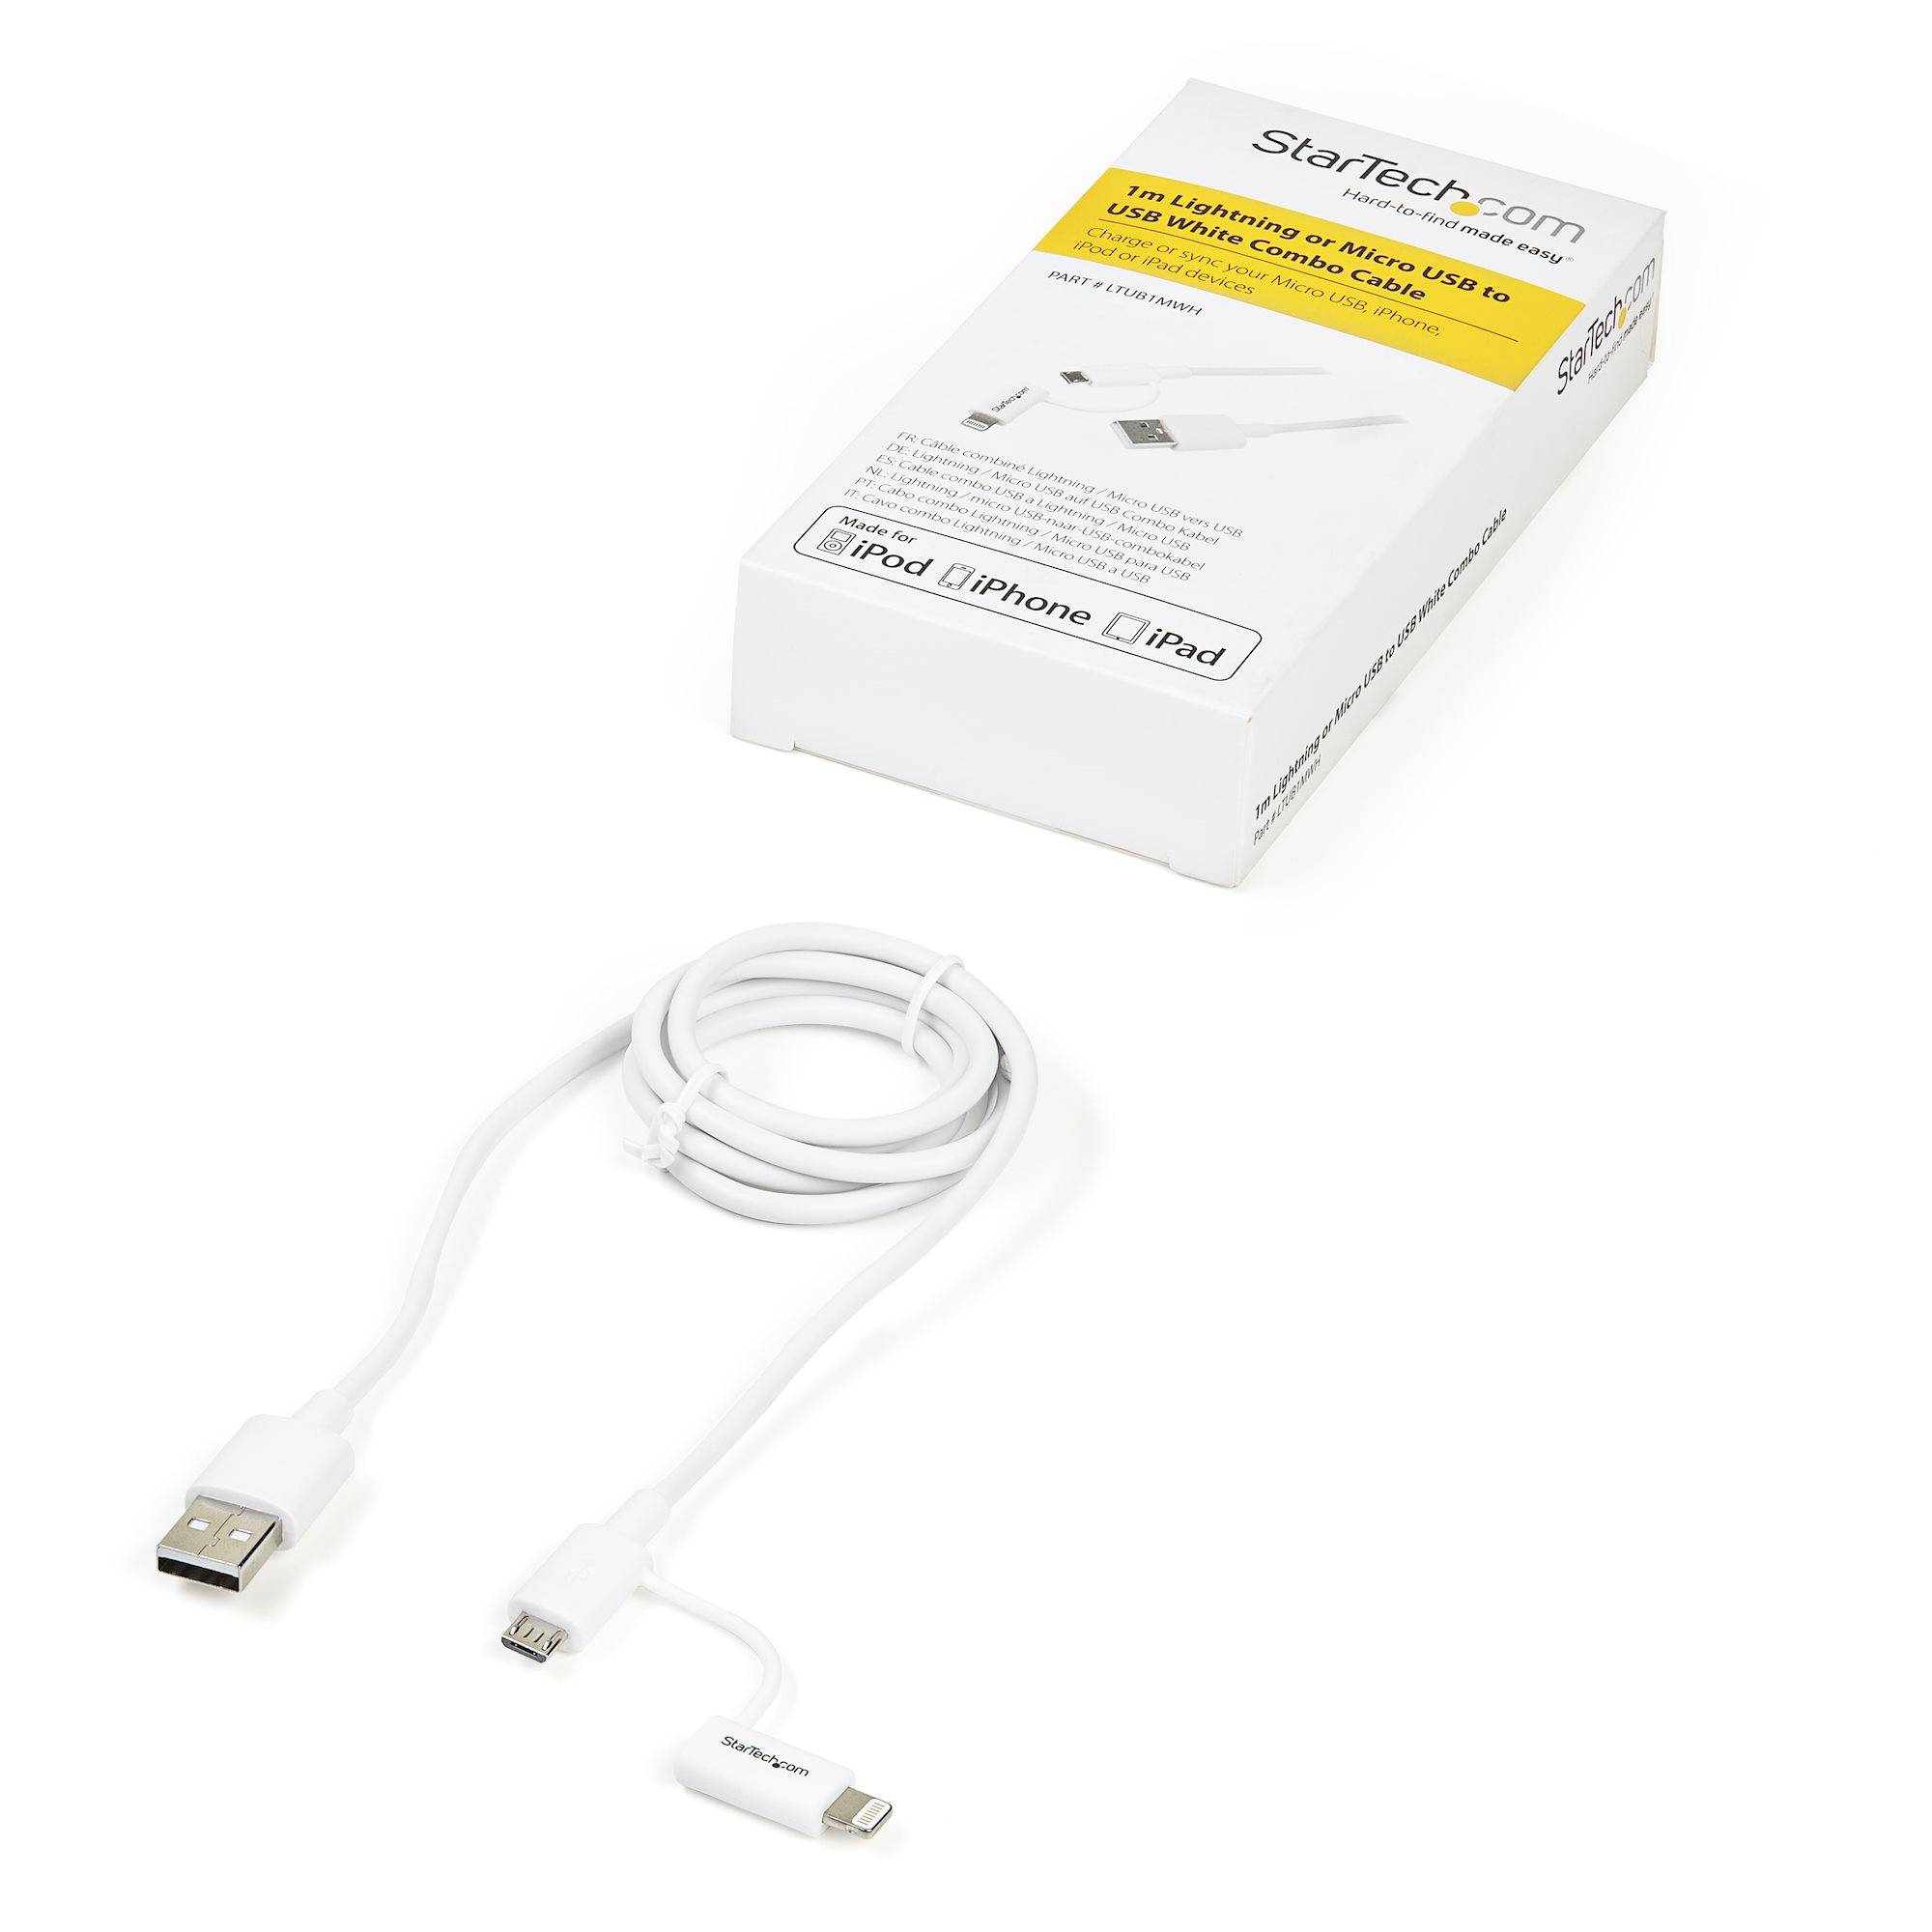 Rca Informatique - image du produit : CABLE LIGHTNING OU MICRO USB VERS USB 1 M - M/M - BLANC